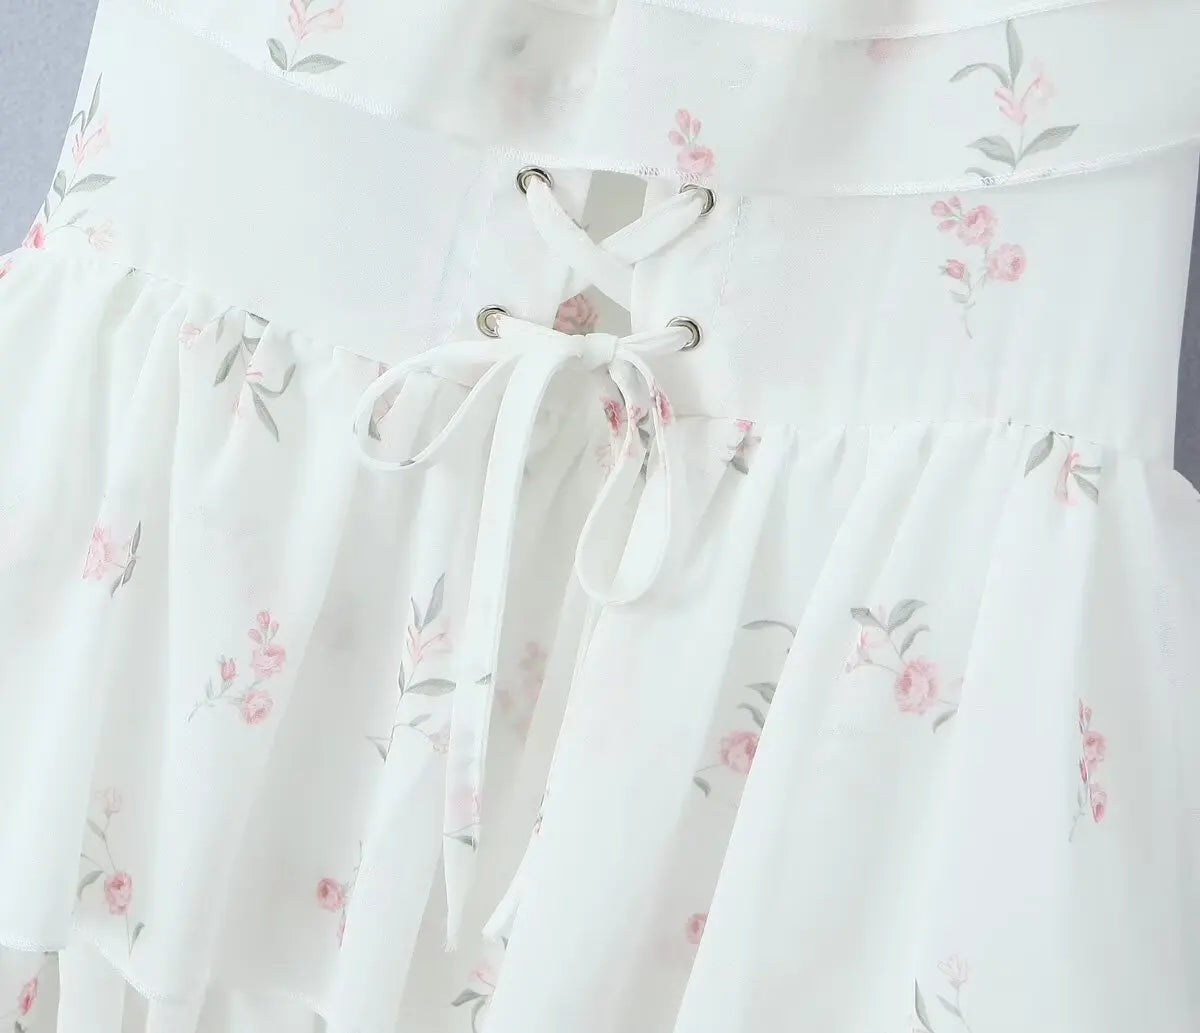 White Off the Shoulder Floral Print Dress